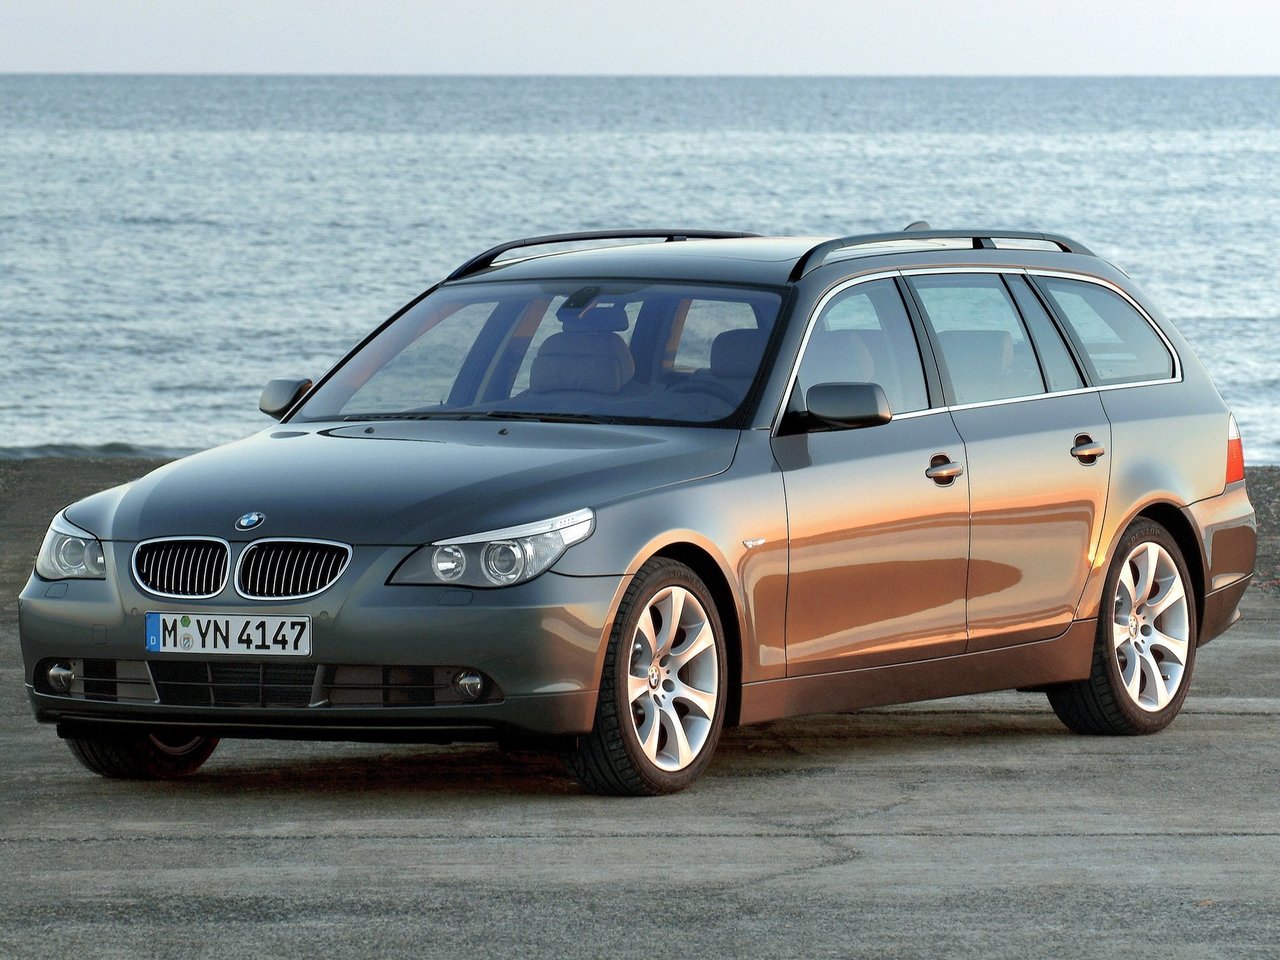 Расход газа десяти комплектаций универсала пять дверей BMW 5 серия. Разница стоимости заправки газом и бензином. Автономный пробег до и после установки ГБО.